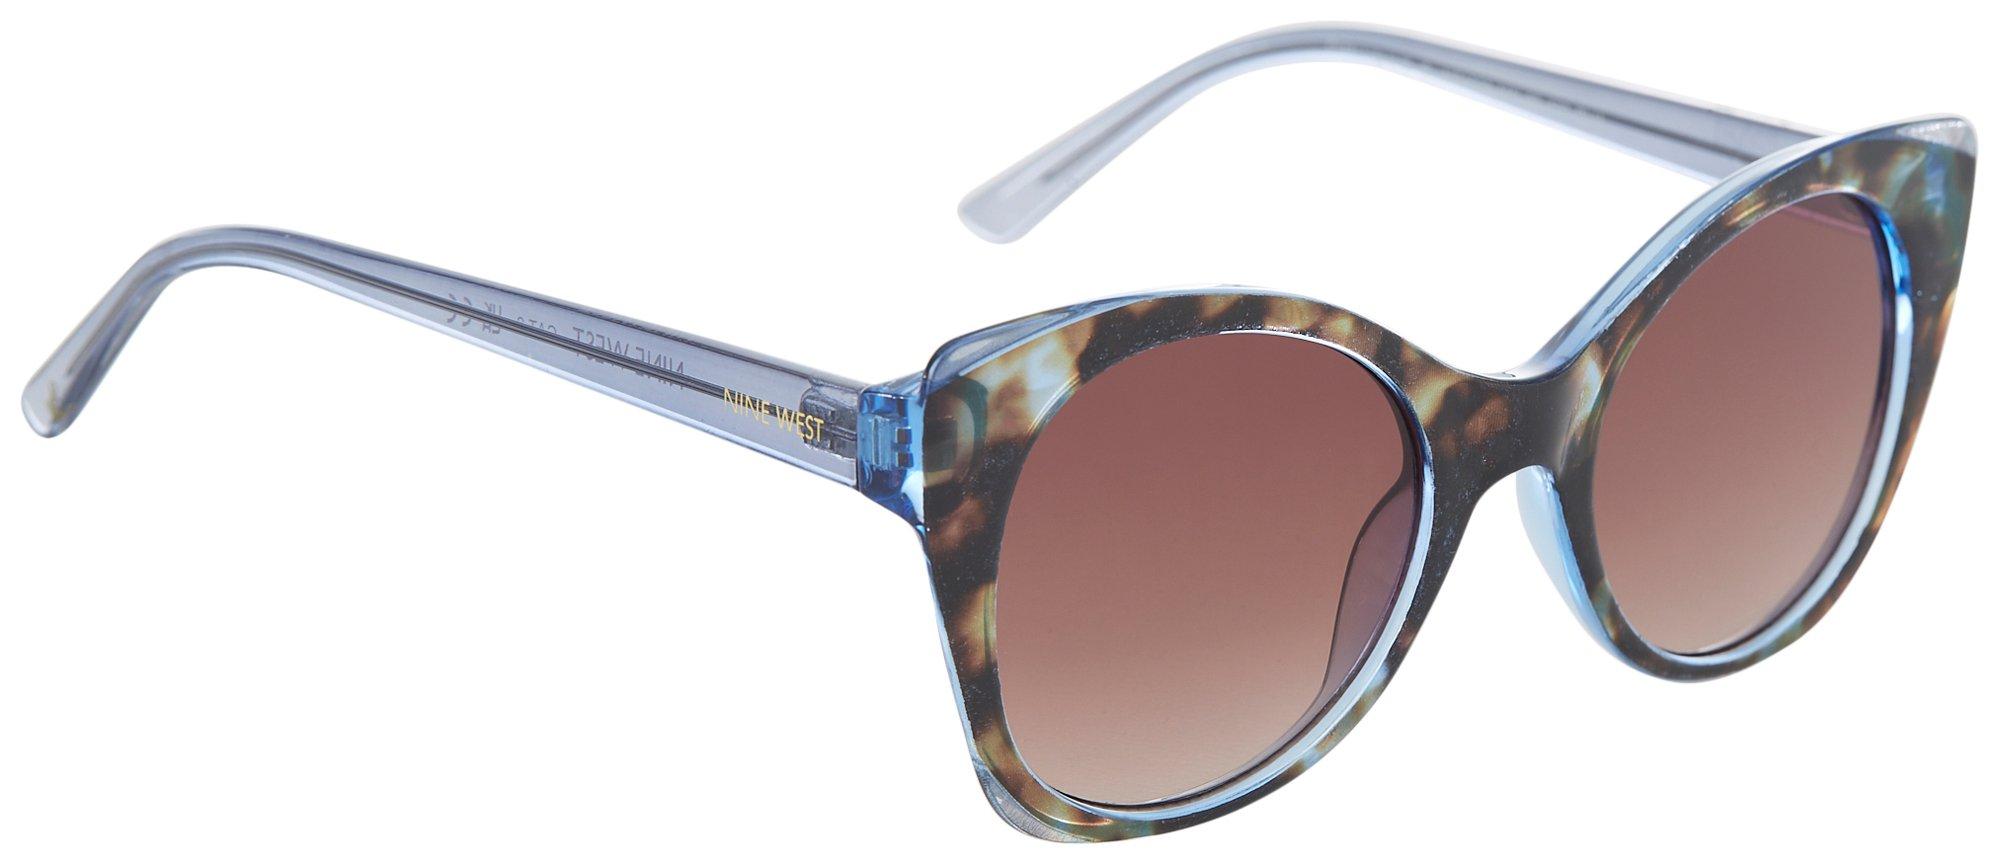 Womens Cateye Tortoiseshell Plastic Sunglasses